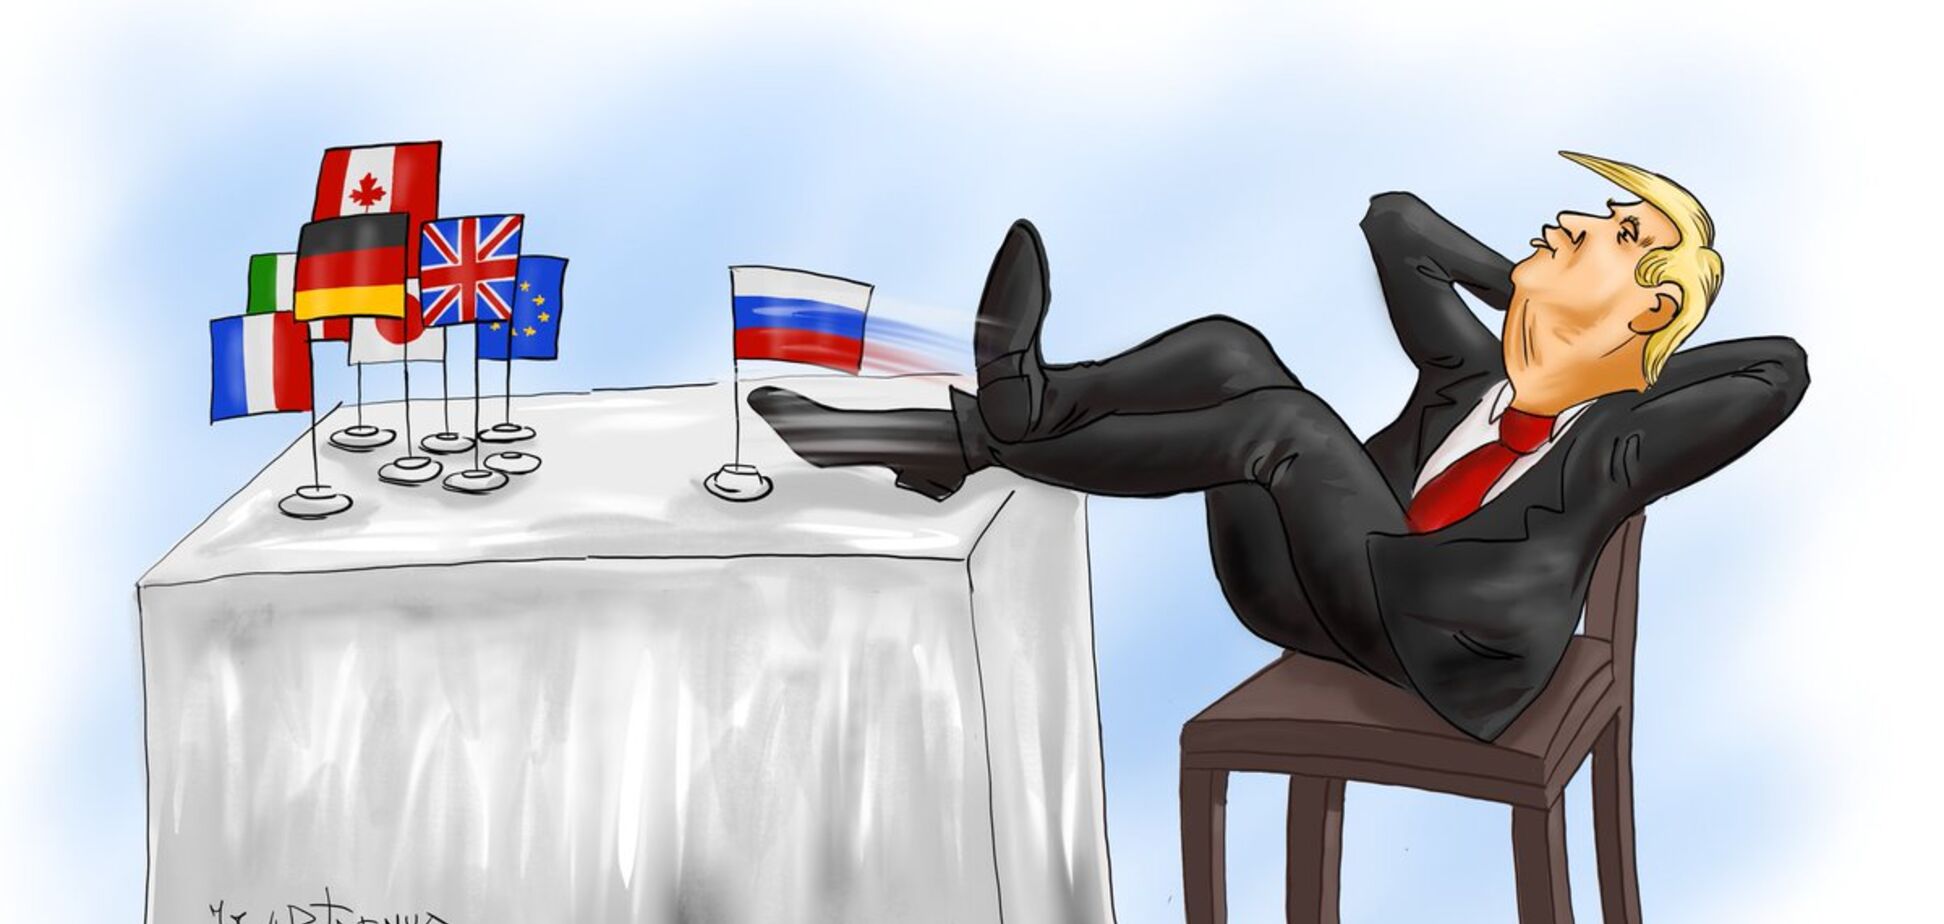 Російська вісімка: з'явилася їдка карикатура на саміт G7